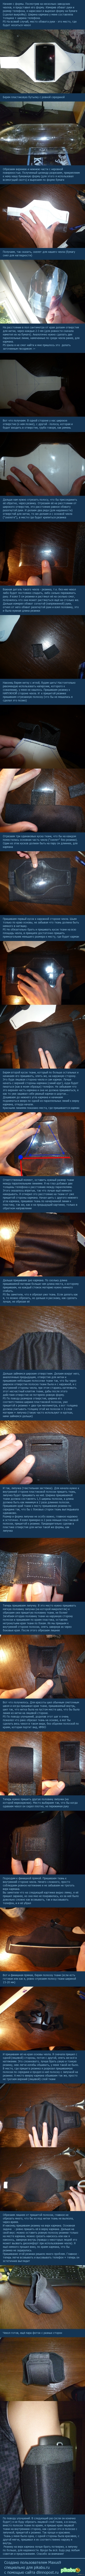        ,   .    <a href="http://pikabu.ru/story/kogda_mnogo_vremeni_i_yentuziazma_2615542">http://pikabu.ru/story/_2615542</a>